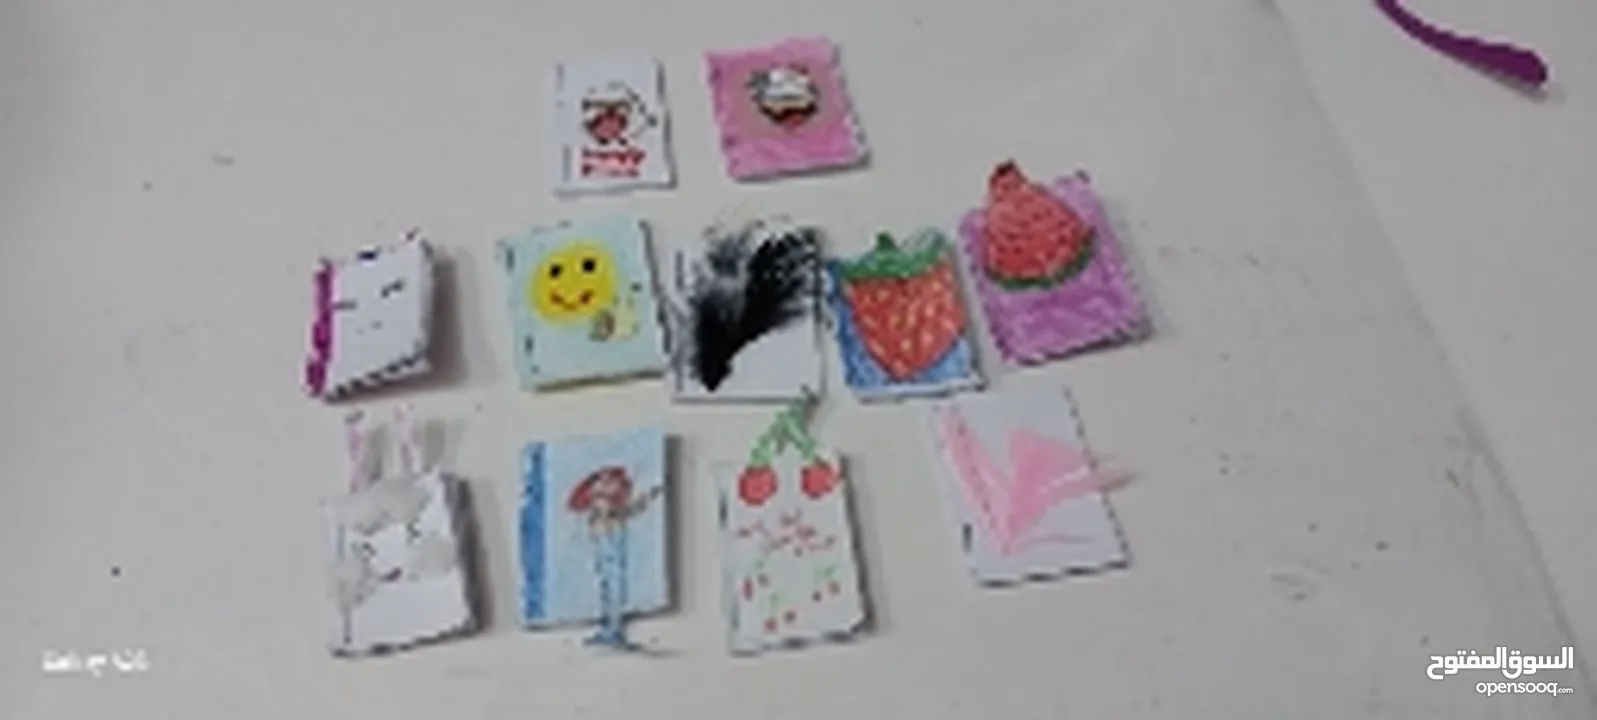 mini cute note books